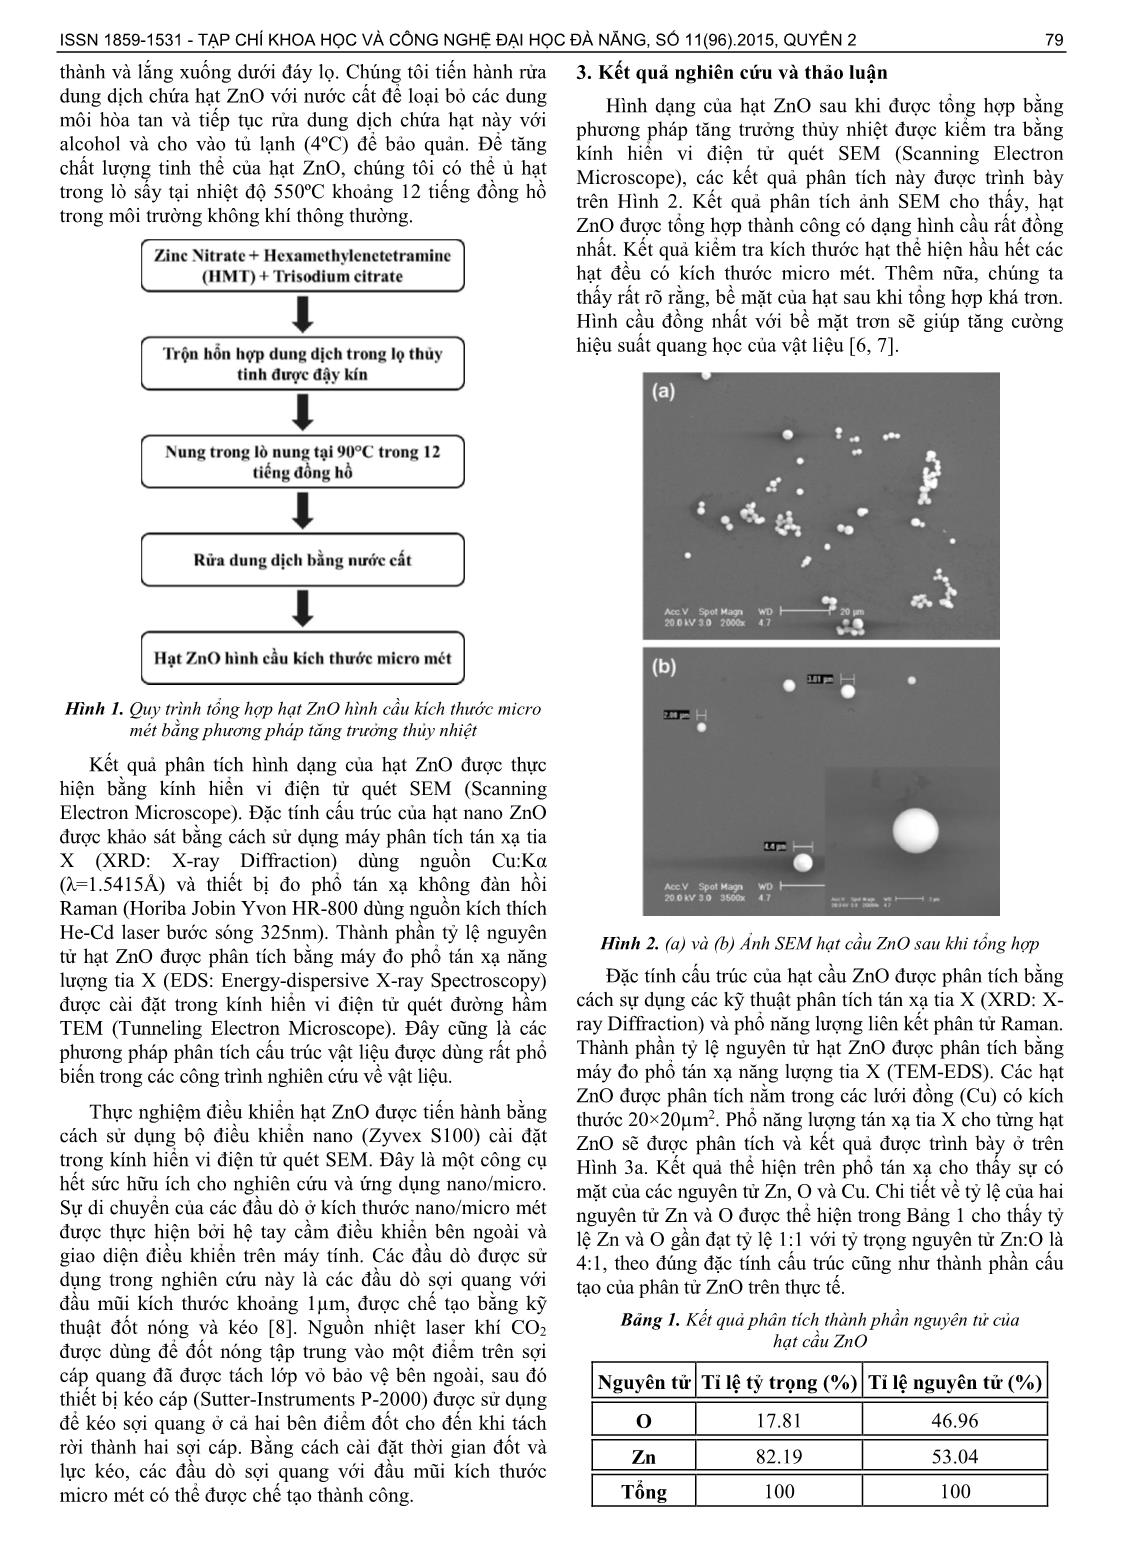 Tổng hợp và phân tích đặc tính quang của các vi hạt cầu ZnO trang 2